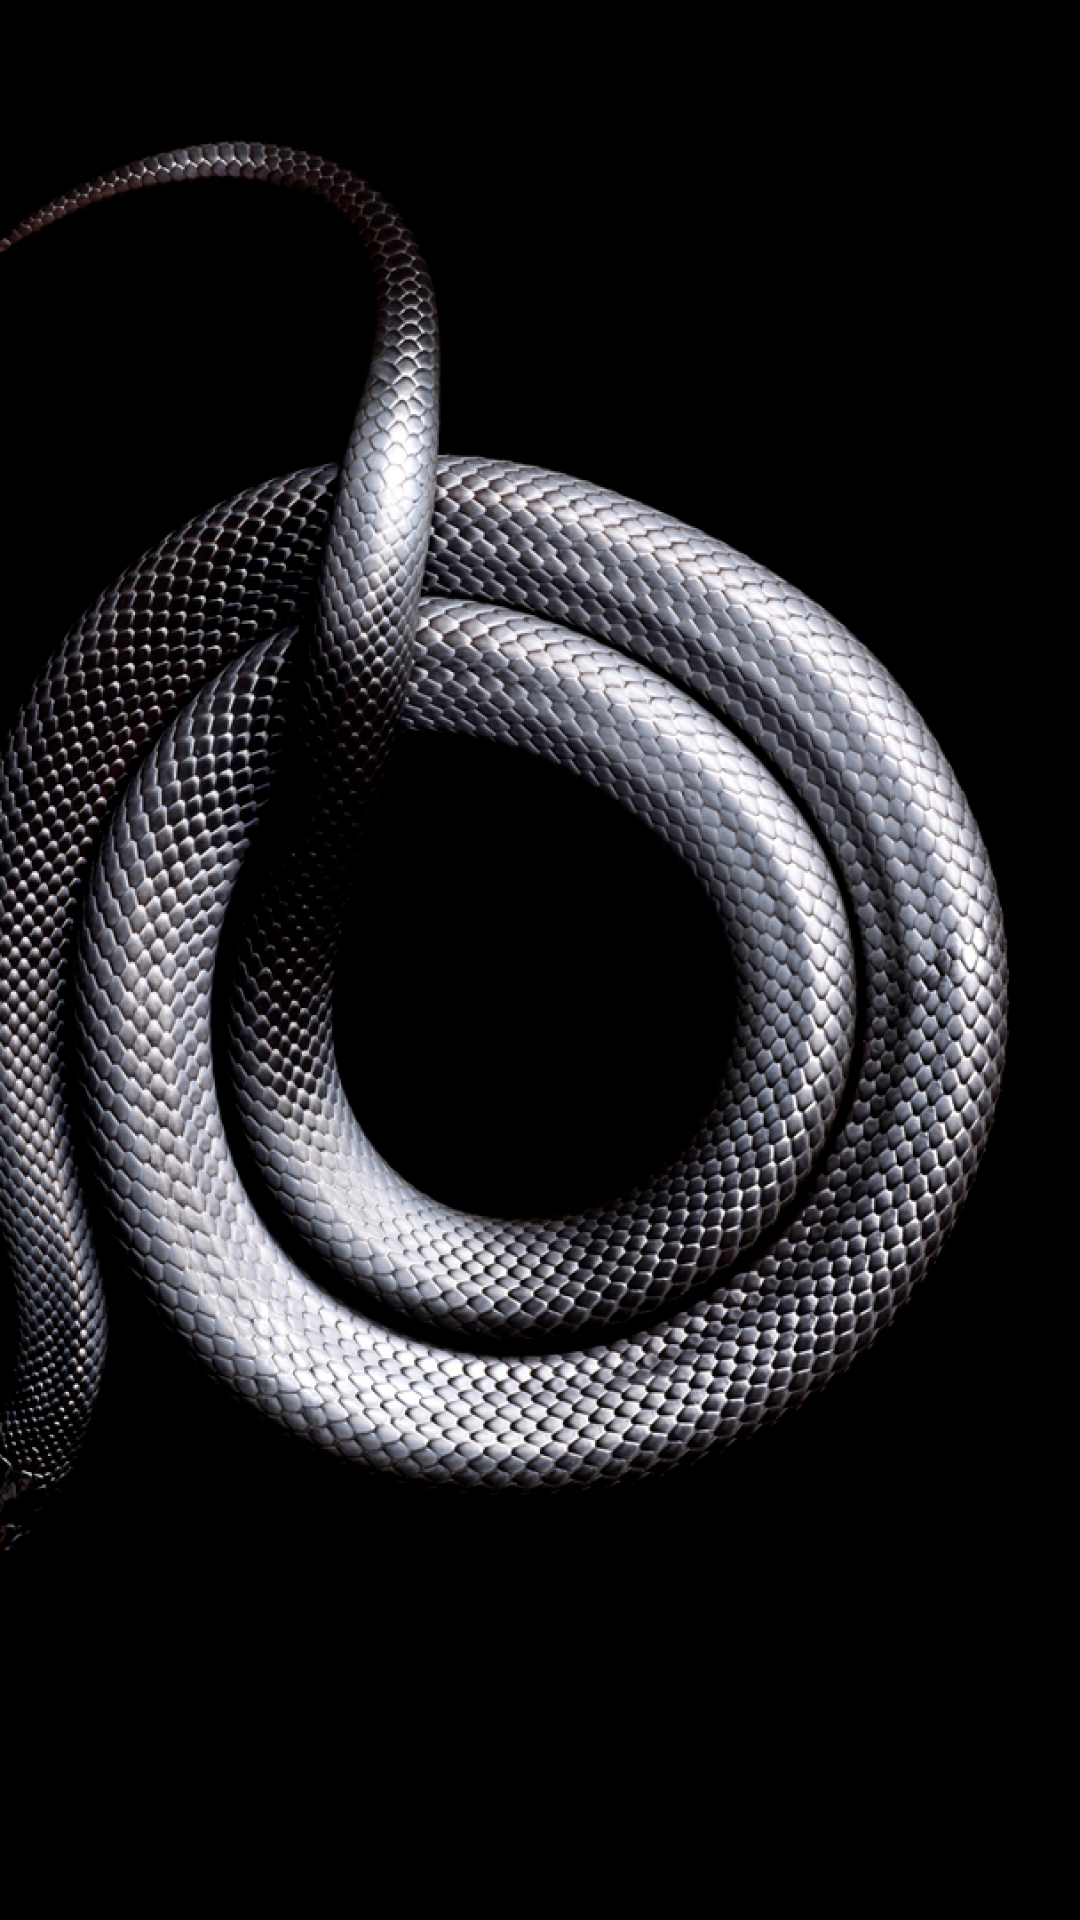 carta da parati serpente,serpente,rettile,bianco e nero,metallo,fotografia di still life